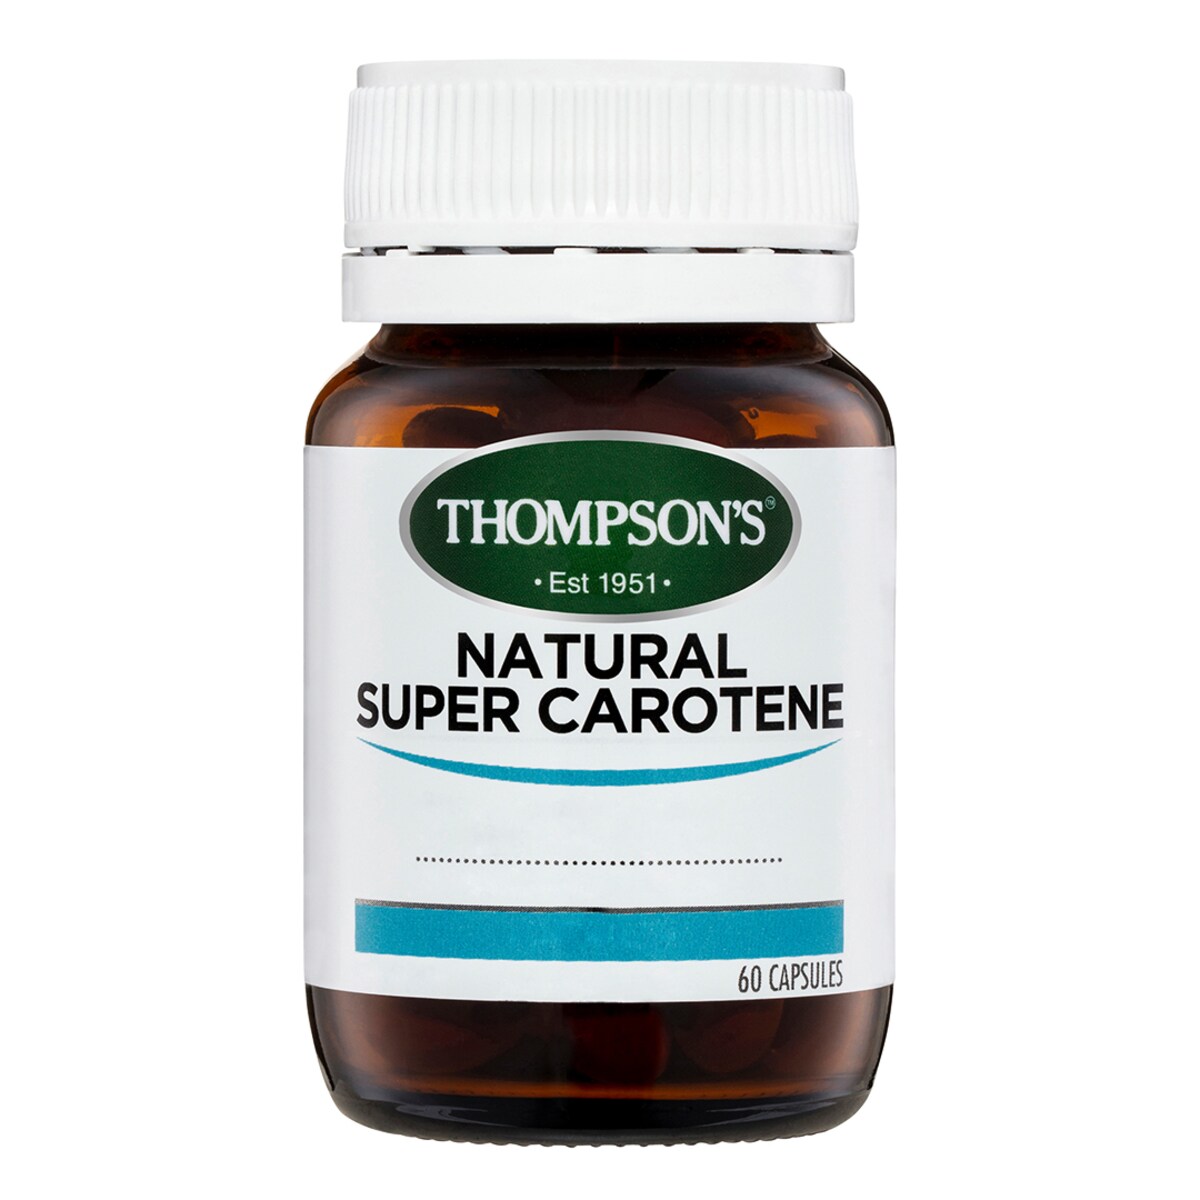 Thompsons Natural Super Carotene 60 Capsules